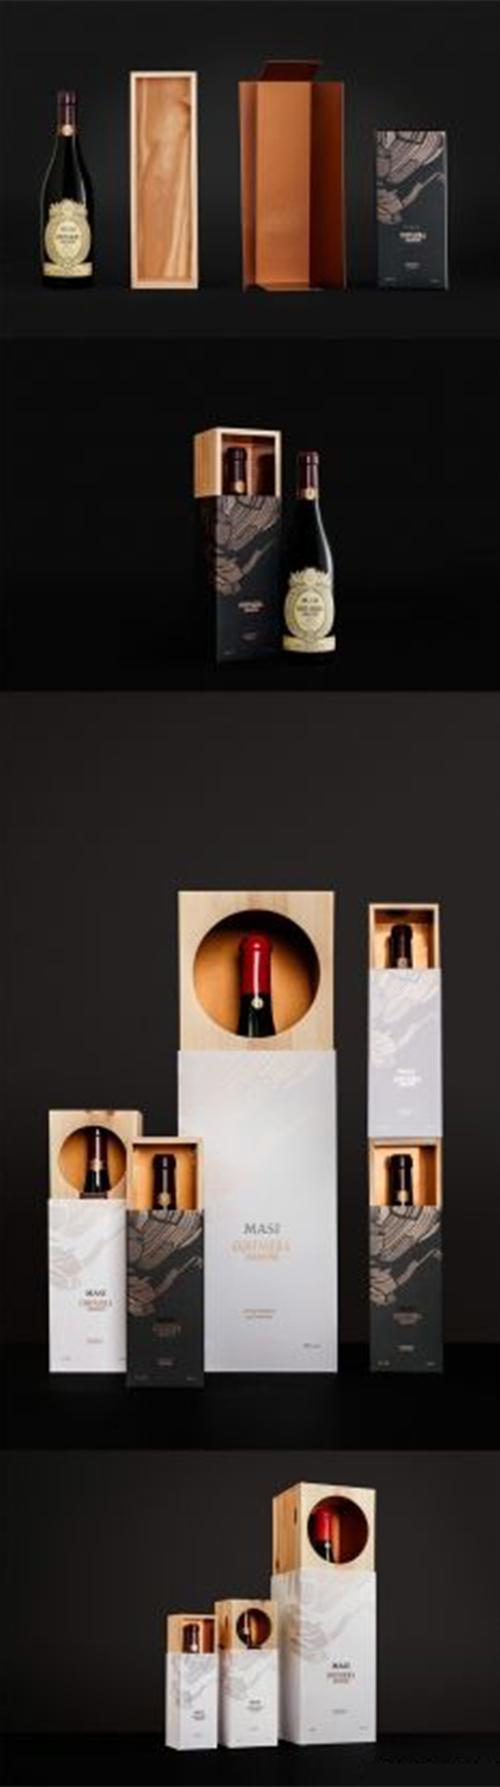 高端红酒礼盒尺寸